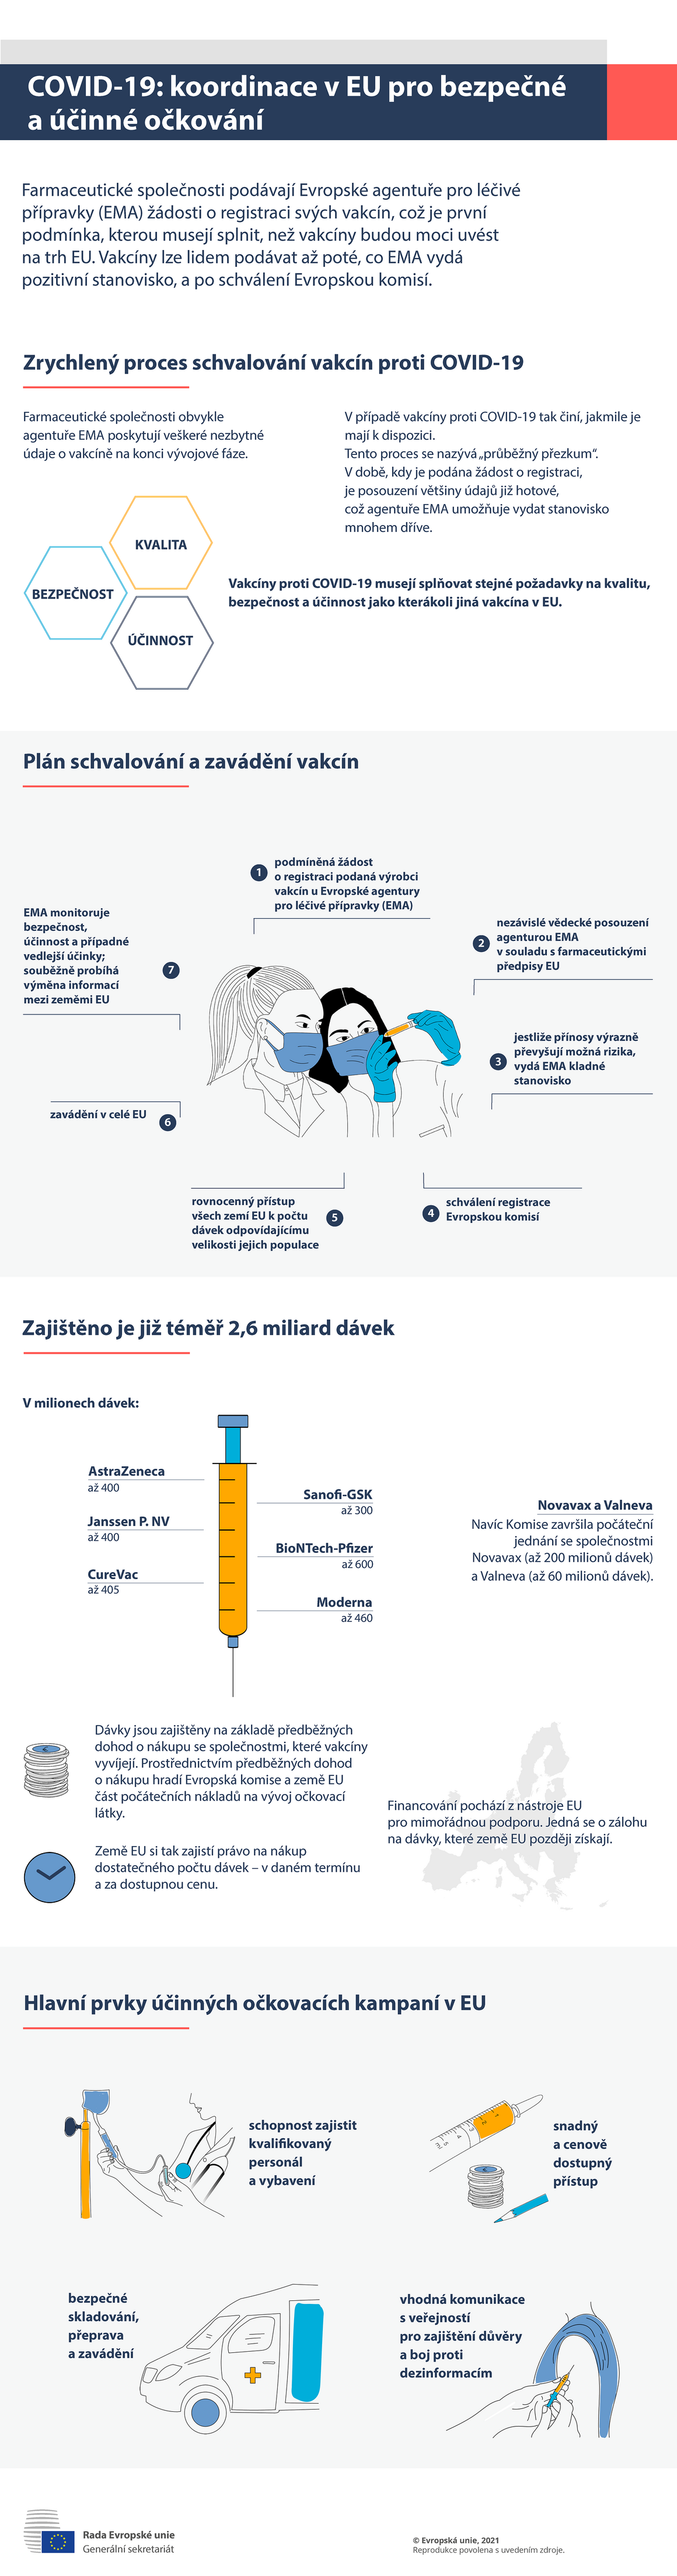 Infografika – COVID-19: koordinace v EU pro bezpečné a účinné očkování